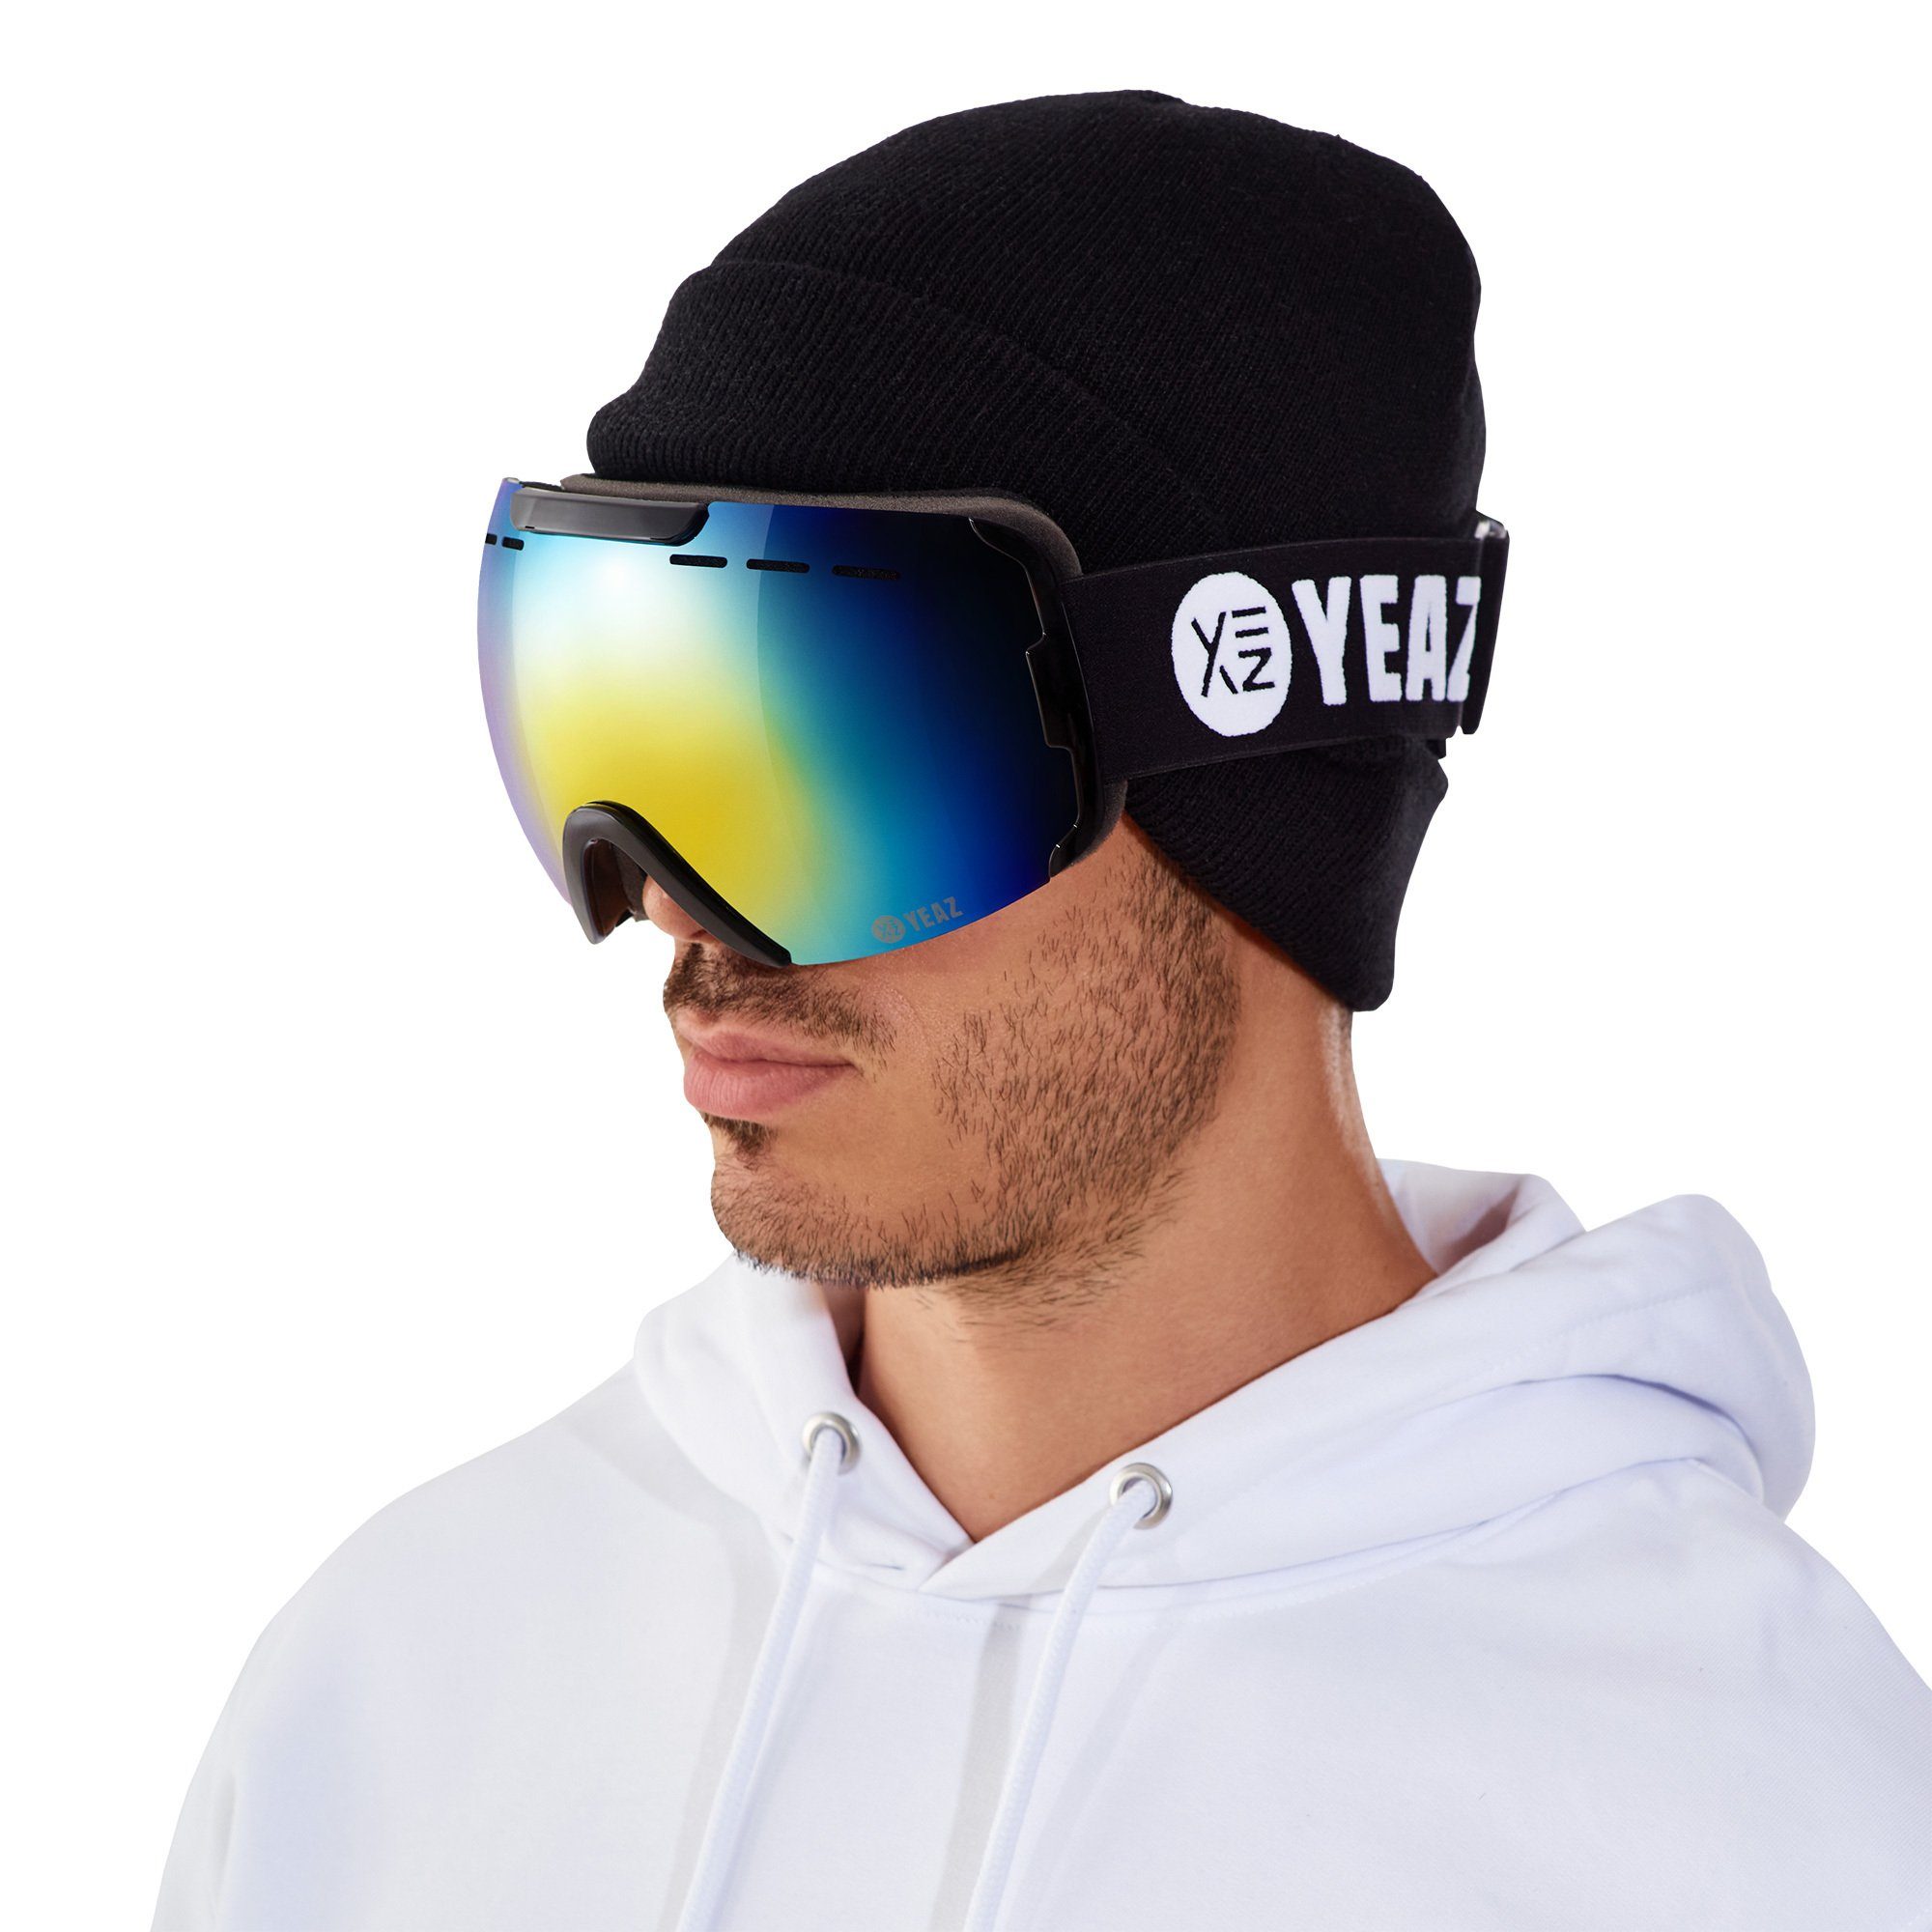 YEAZ Skibrille RIDGE ski- snowboardbrille schwarz/rot/weiß, Premium-Ski-  und Snowboardbrille für Erwachsene und Jugendliche